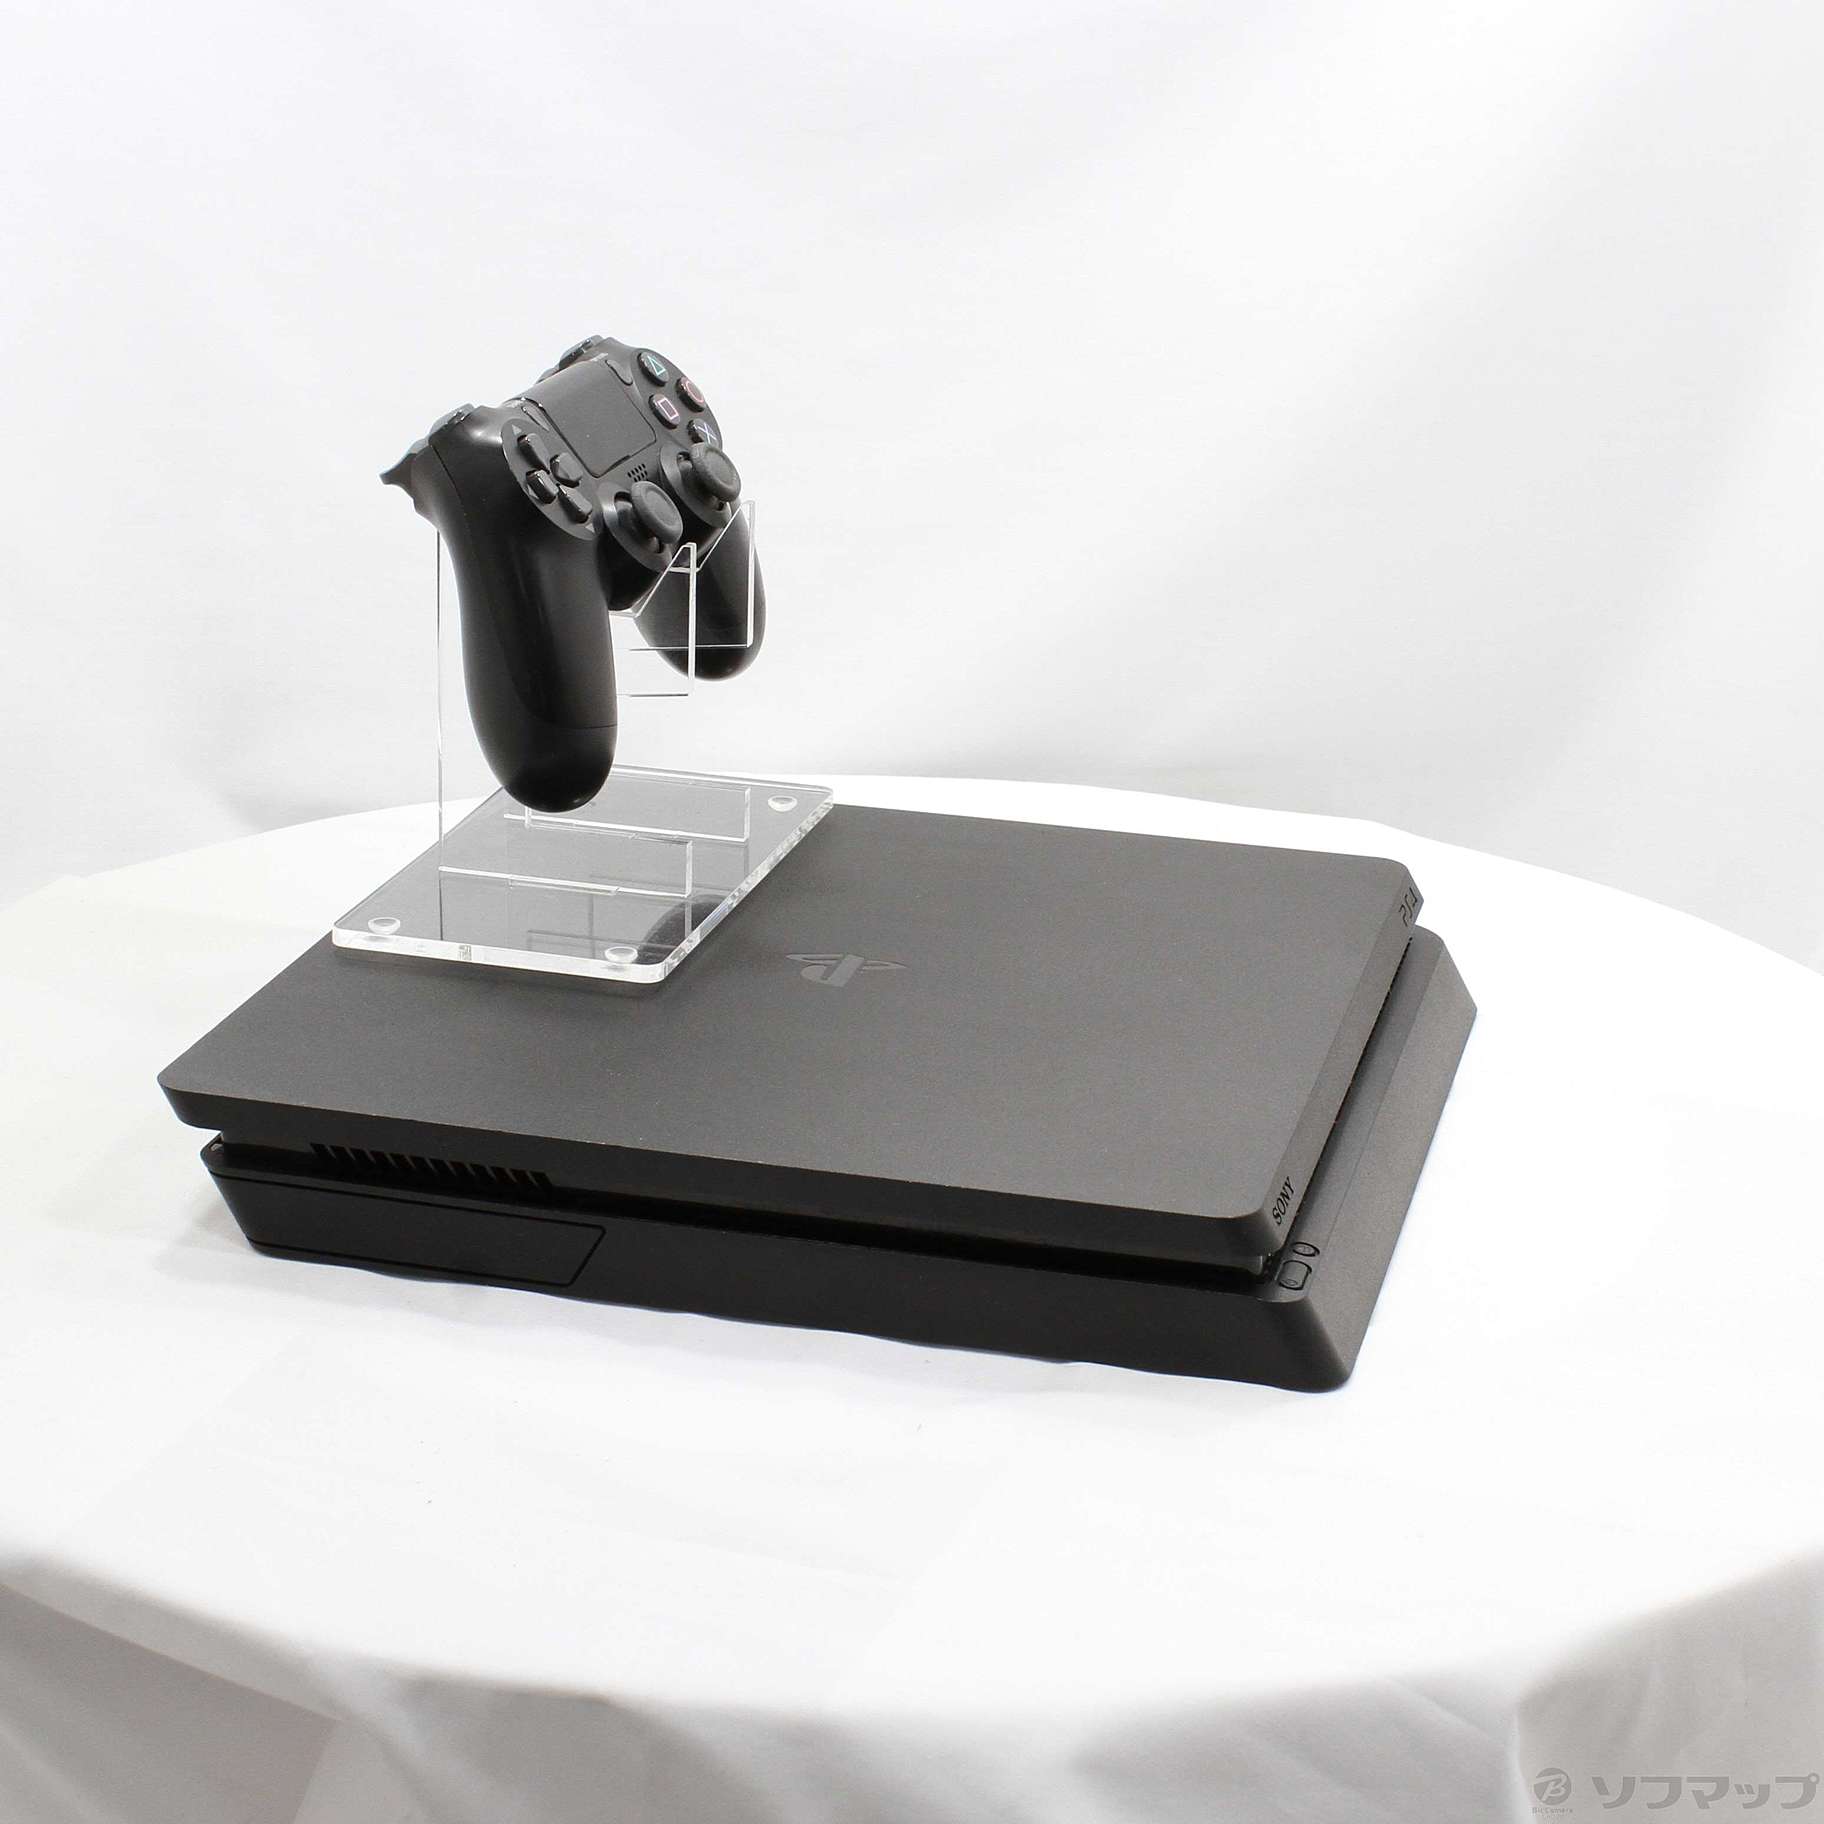 中古】PlayStation 4 ジェット・ブラック 500GB CUH-2200AB01 